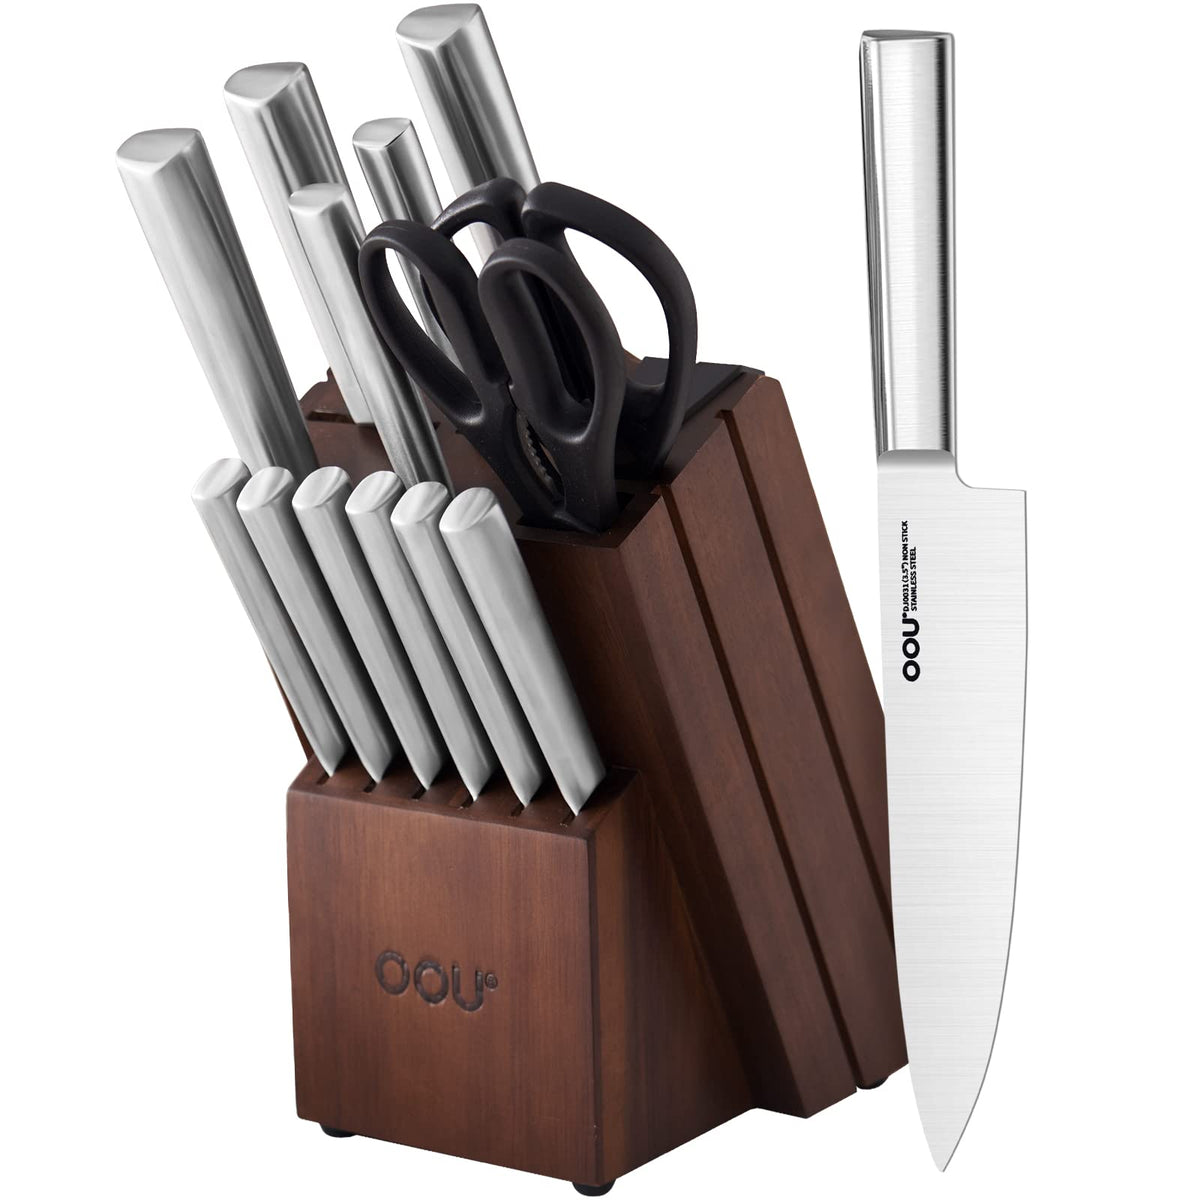 和平フレイズ(Wahei freiz) bin8 vineight Kitchen Tools Set, 11.1 x 3.7 x 3.7  inches, clear